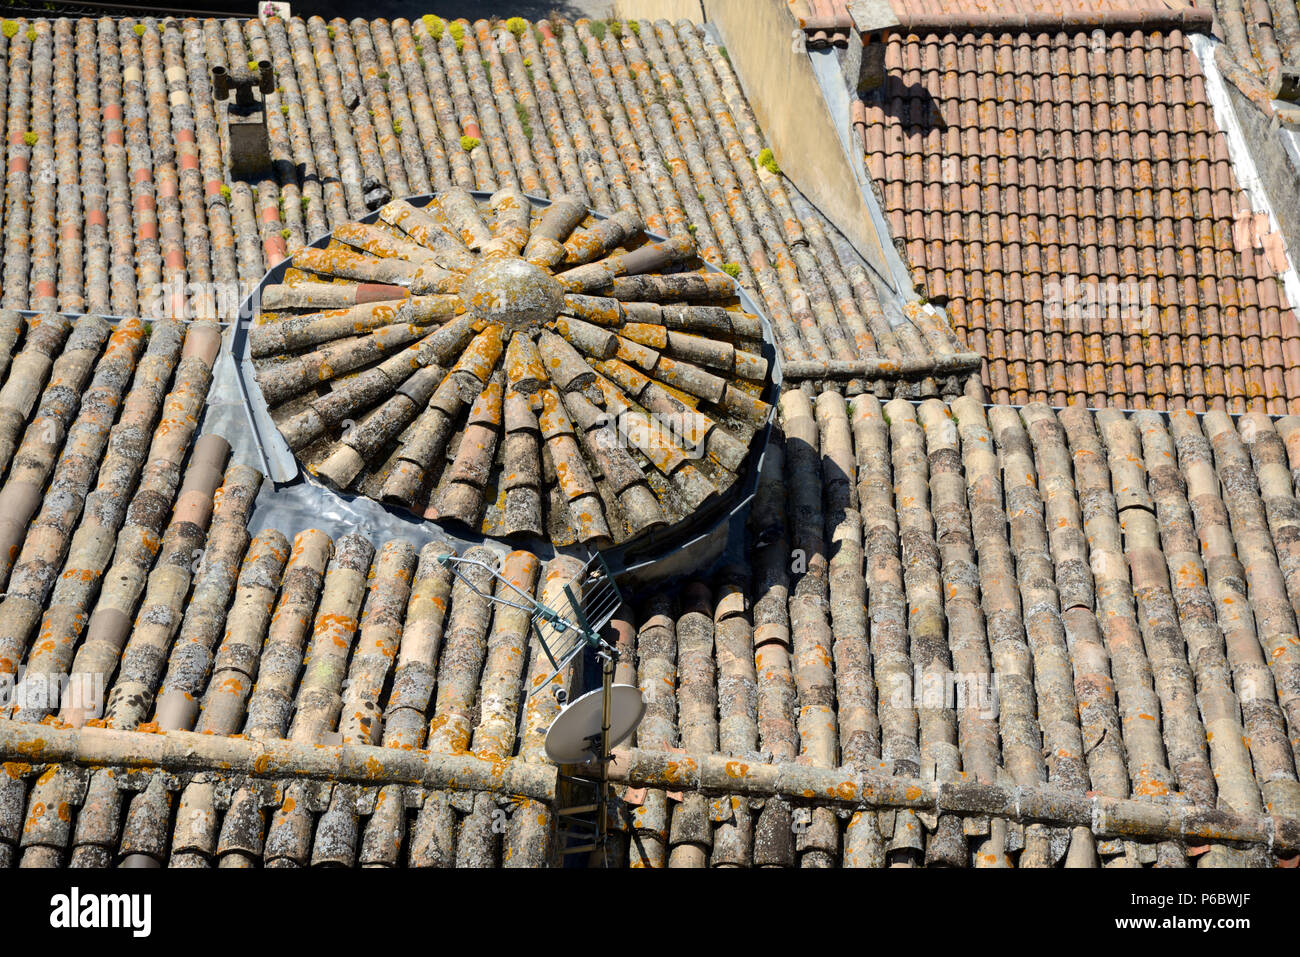 Kreisförmige Ziegeldach und Blick auf die Terrakotta Dächer von Grignan Drôme Provence Frankreich Stockfoto